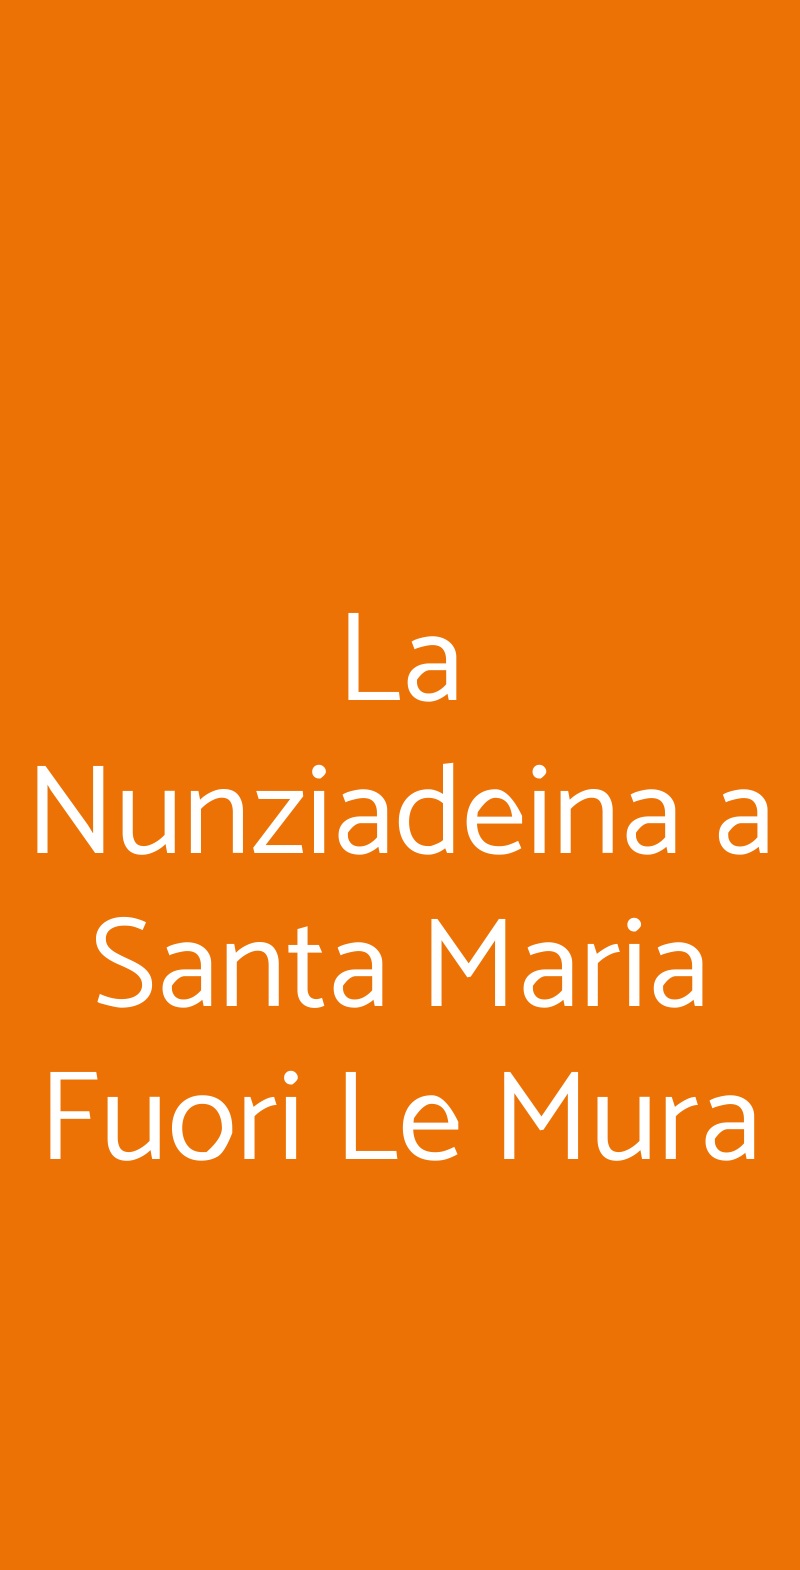 La Nunziadeina a Santa Maria Fuori Le Mura Nonantola menù 1 pagina